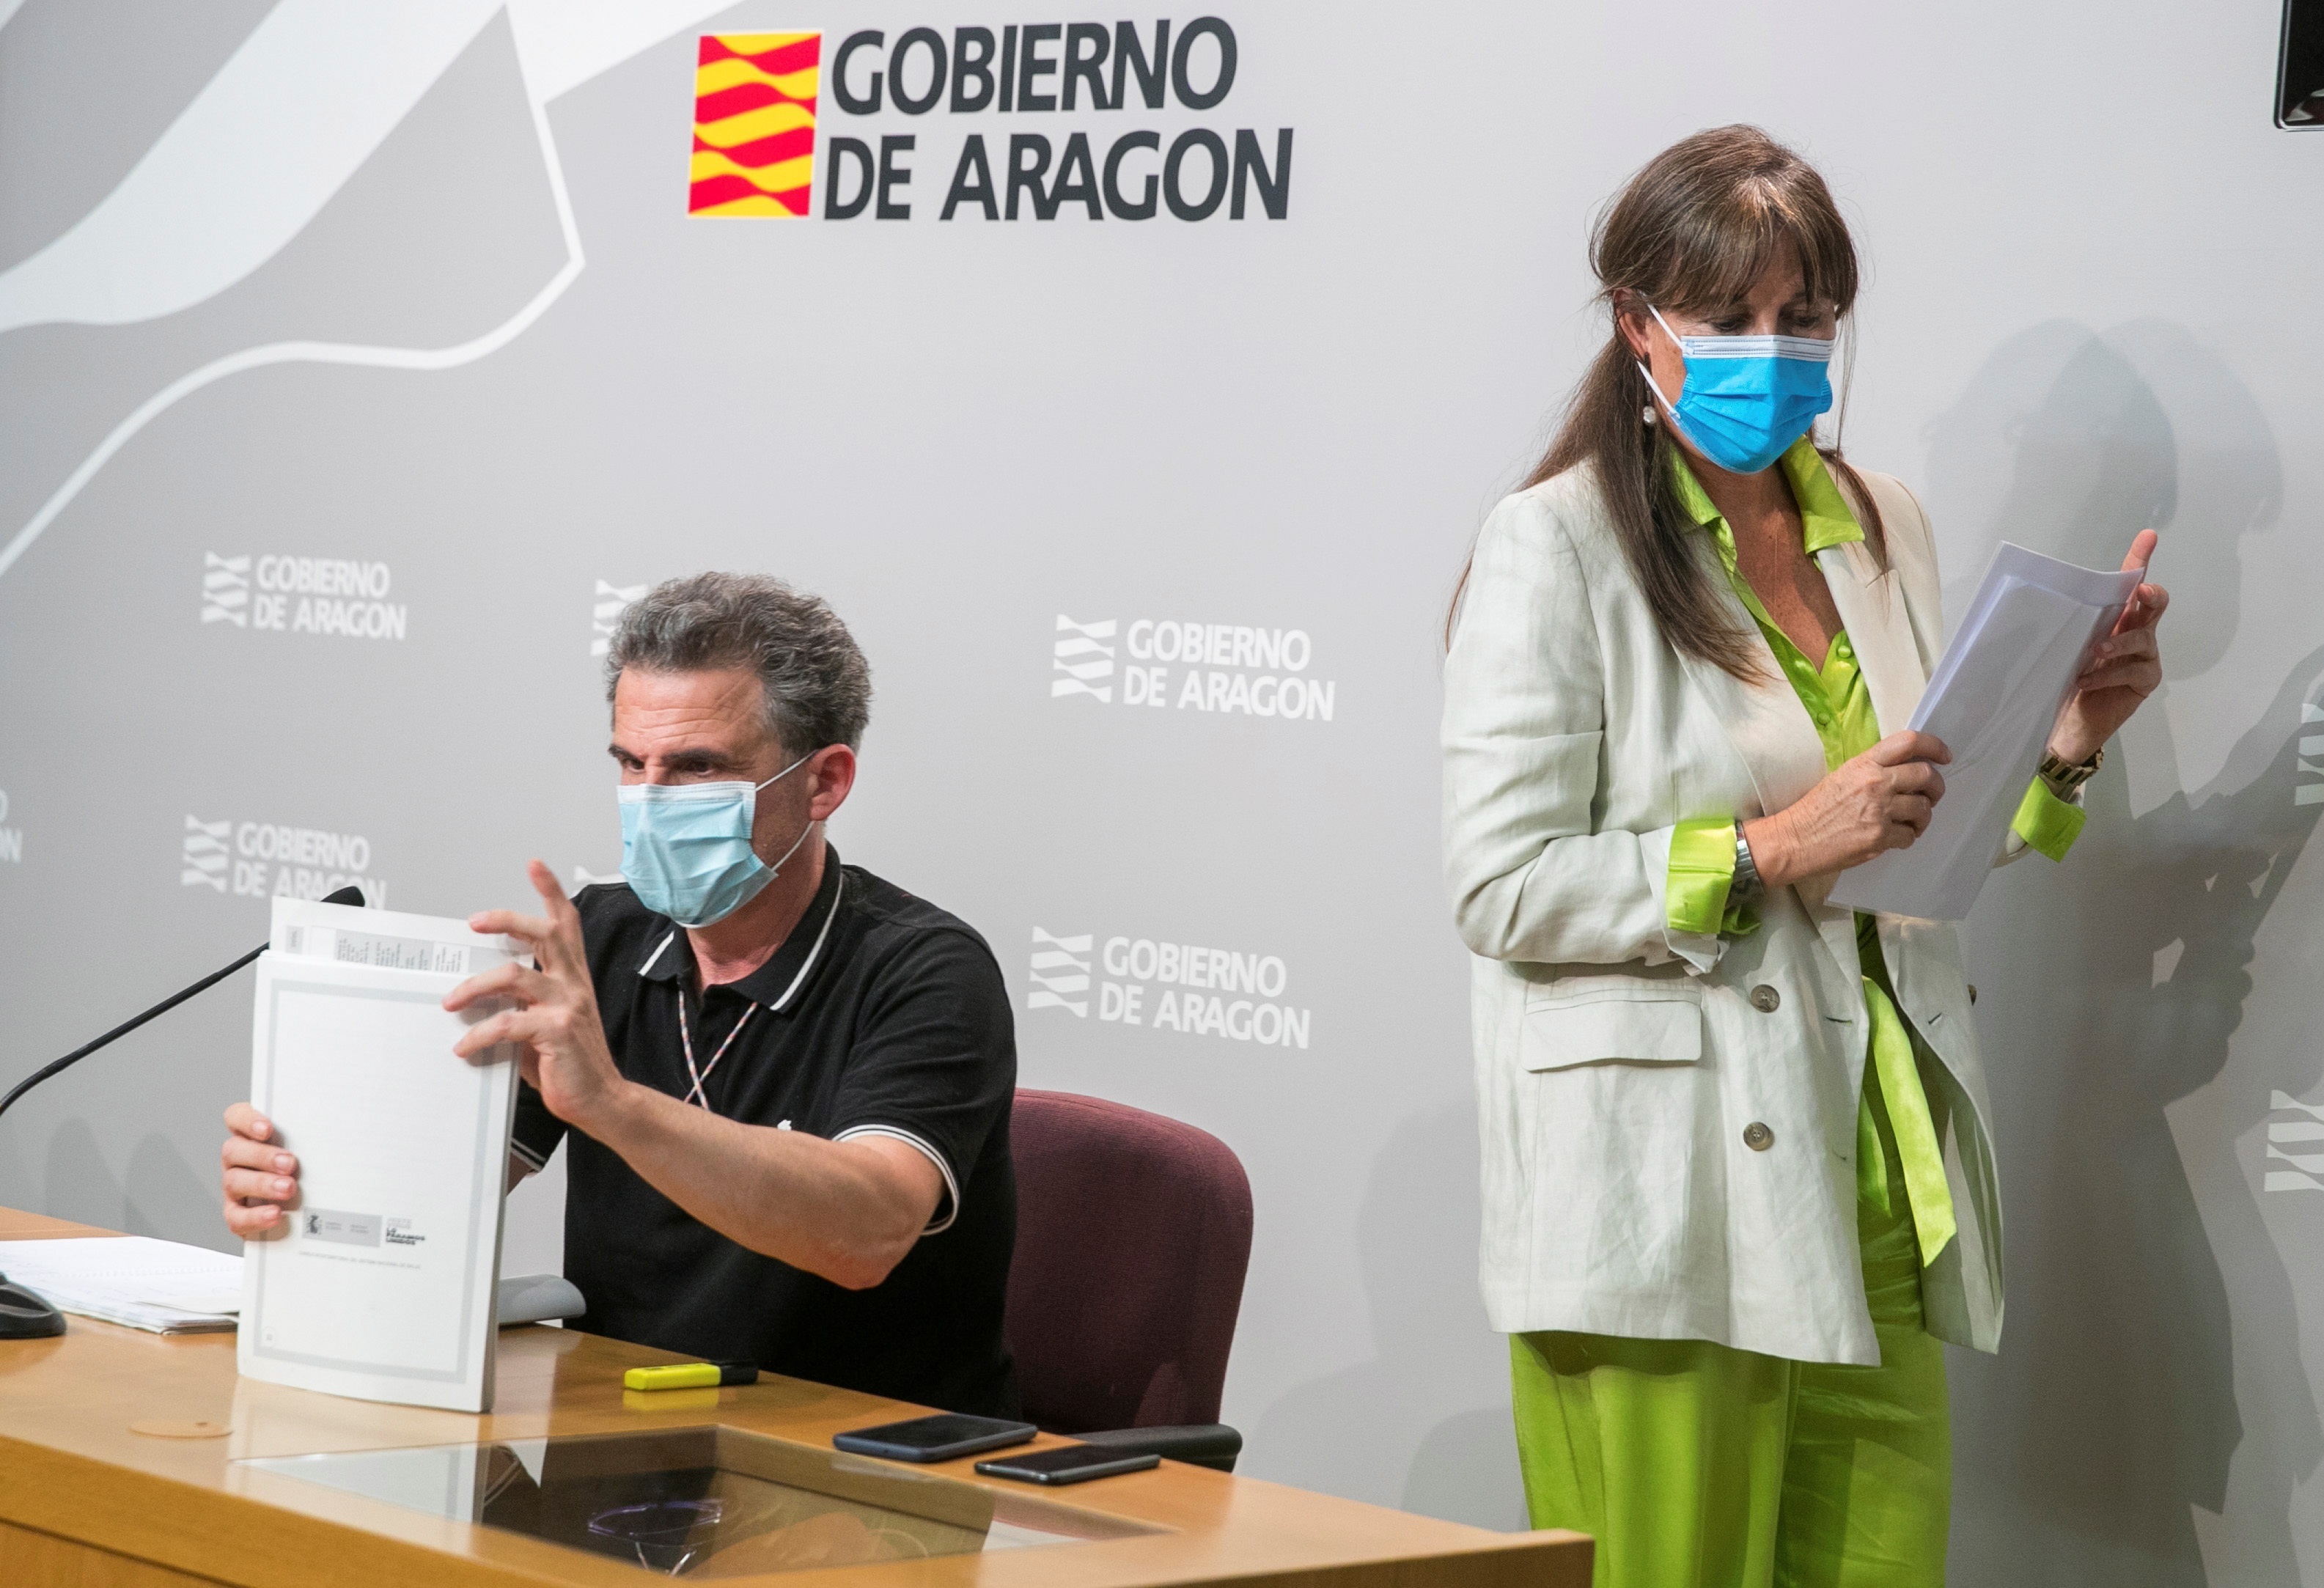 Julio 2020 (16-07-20) El Gobierno de Aragón propone el confinamiento de Zaragoza y su comarca